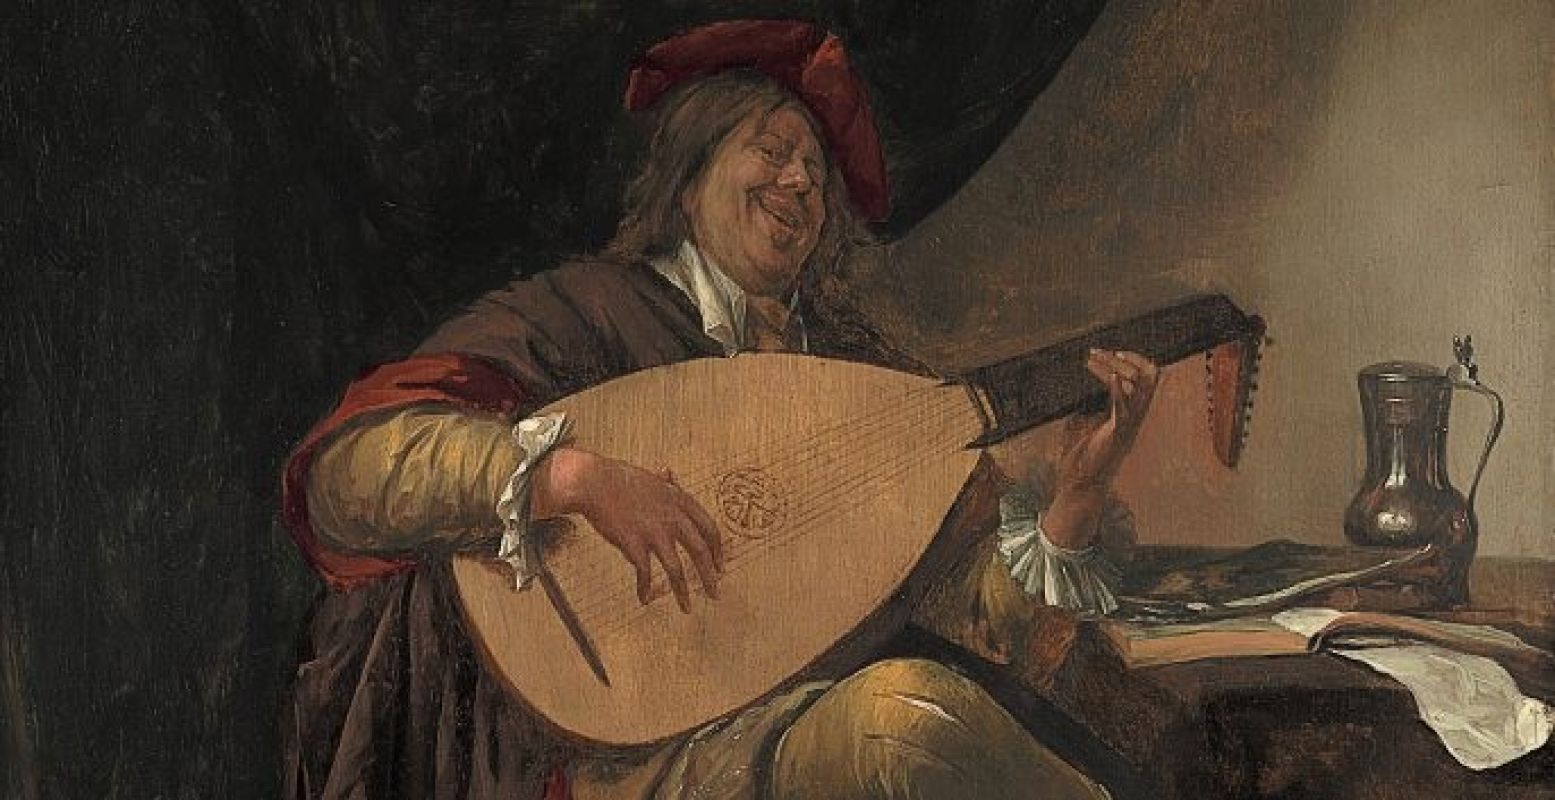 Jan Steen, zelfportret als luitspeler, rond 1663/1665. Copyright: Museo Thyssen-Bornemisza, Madrid